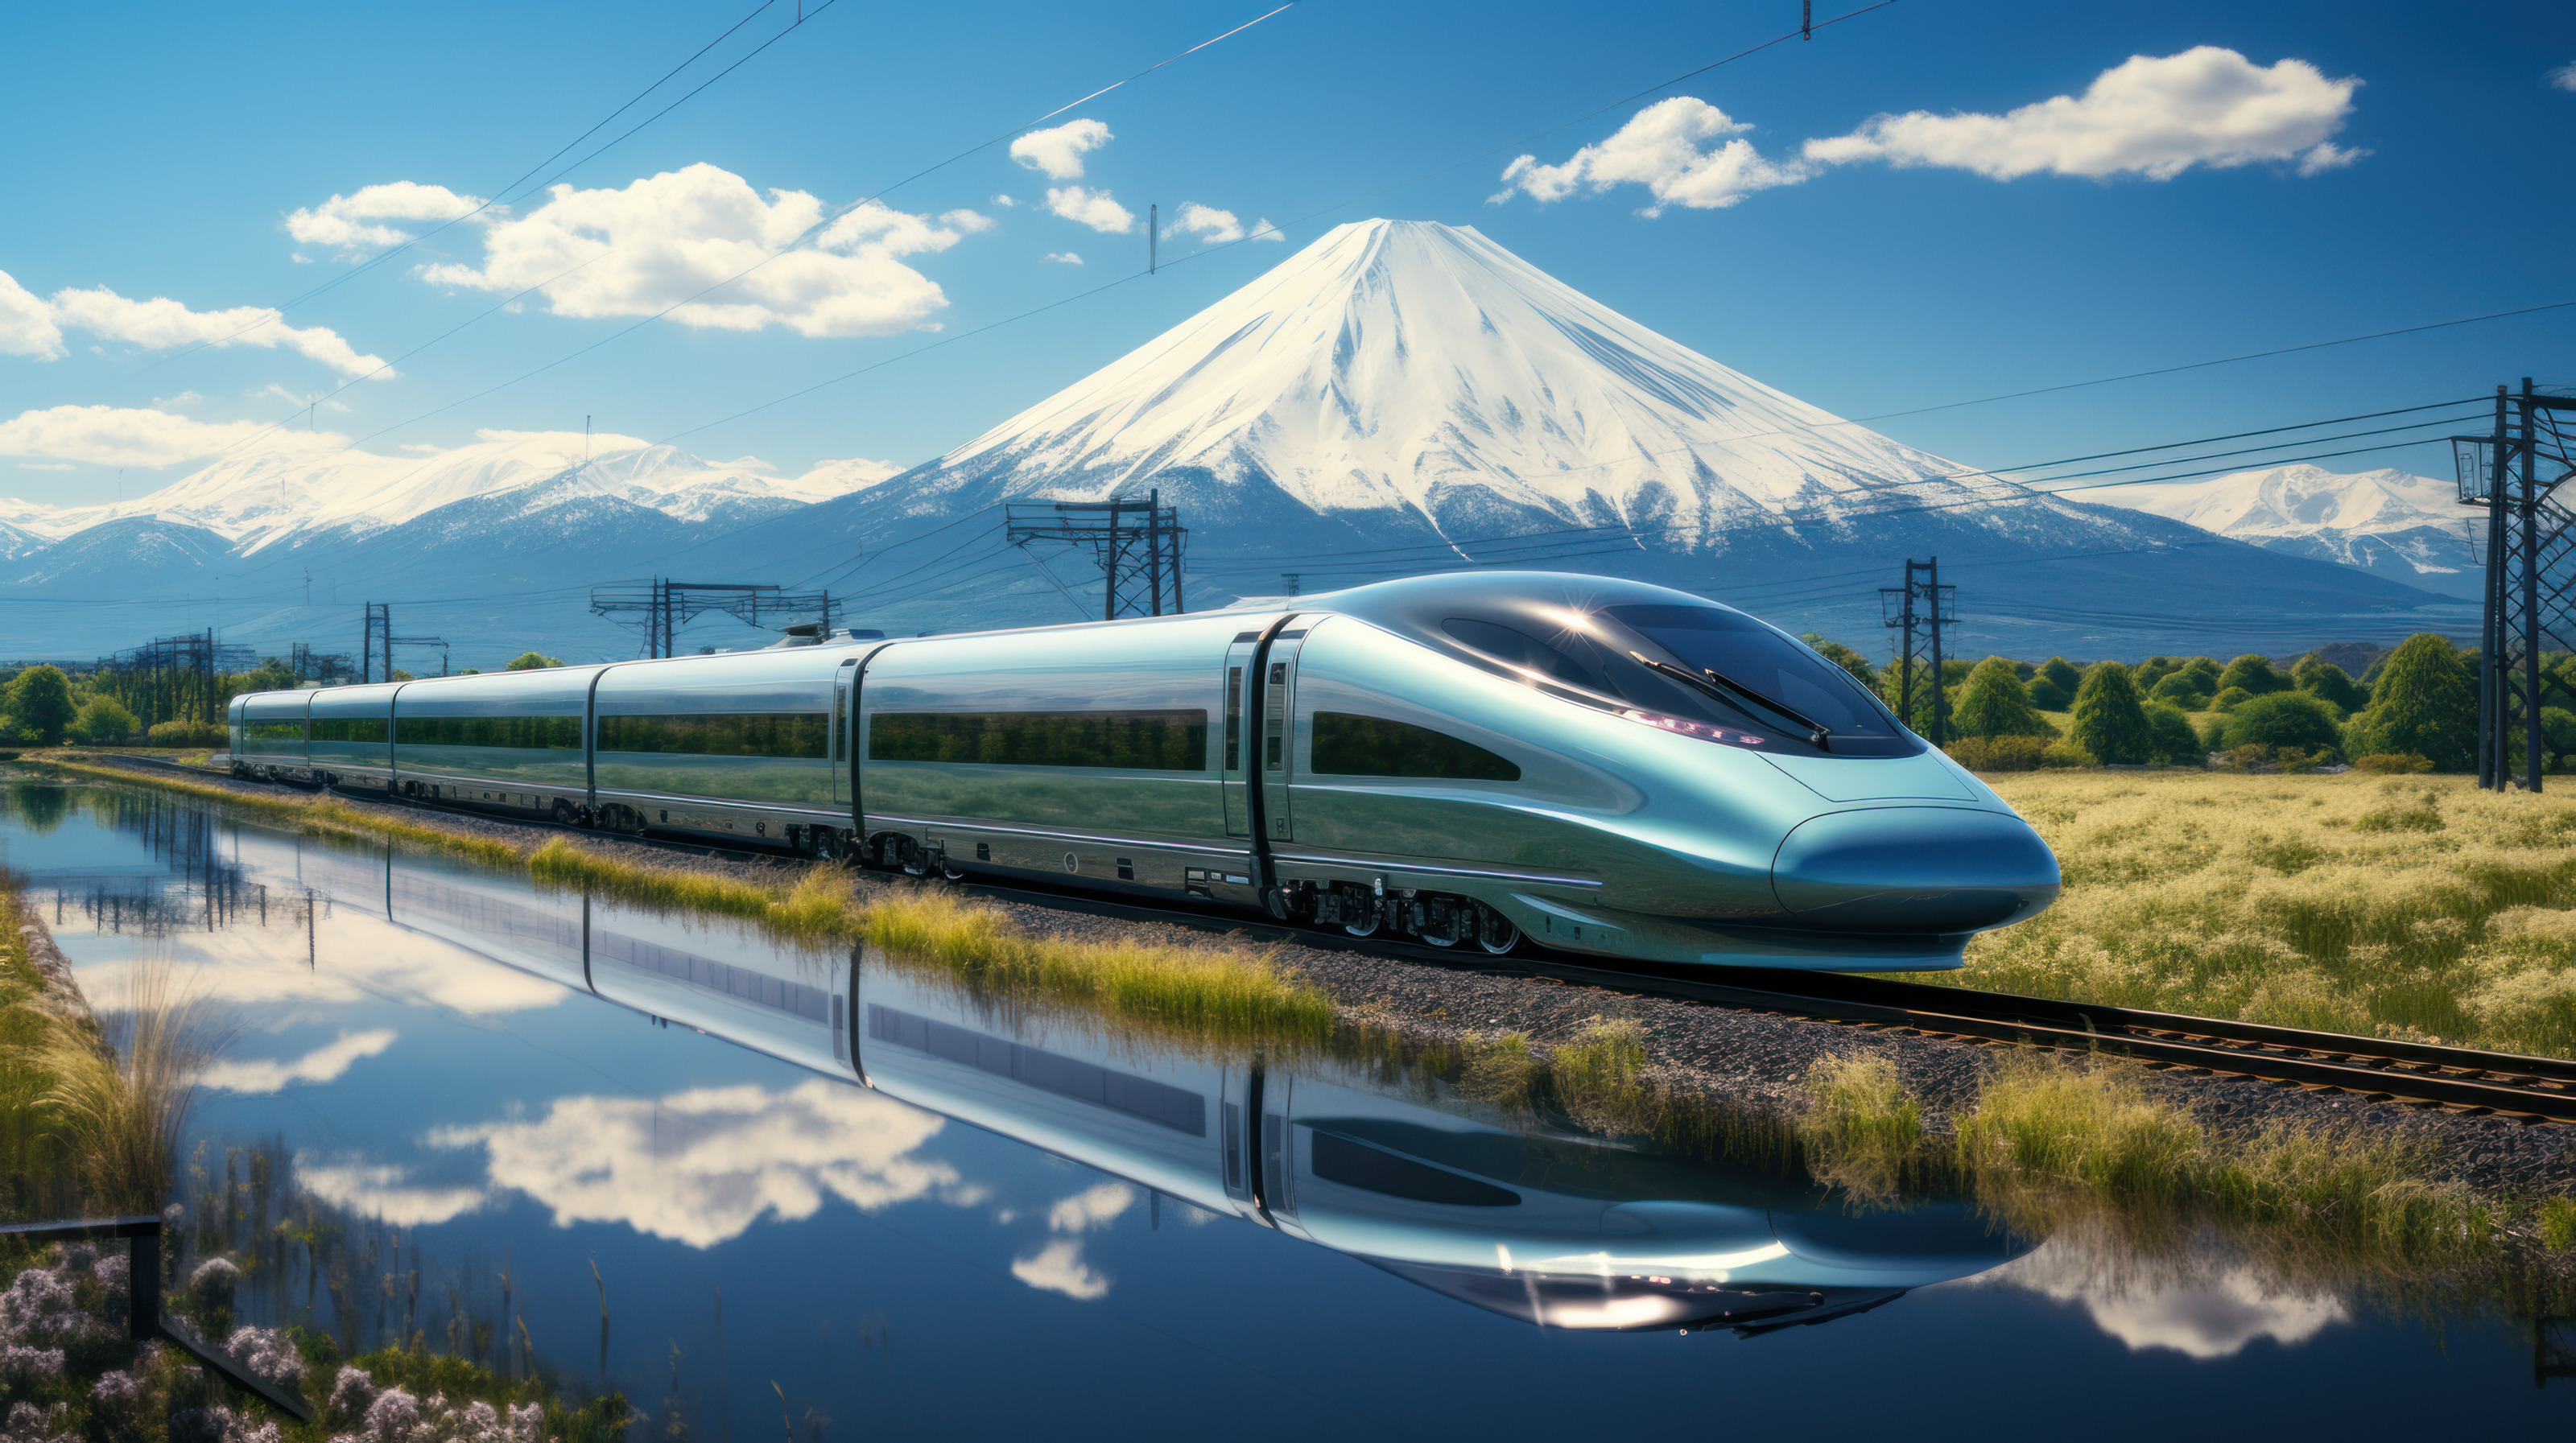 Zug Shinkansen spiegelt sich in einem See neben den Bahngleisen, dahinter zeigt sich eine Landschaft mit Hochspannungsleitungen sowie dem Mount Fuji bei blauem Himmel mit Wolken, KI-generiert